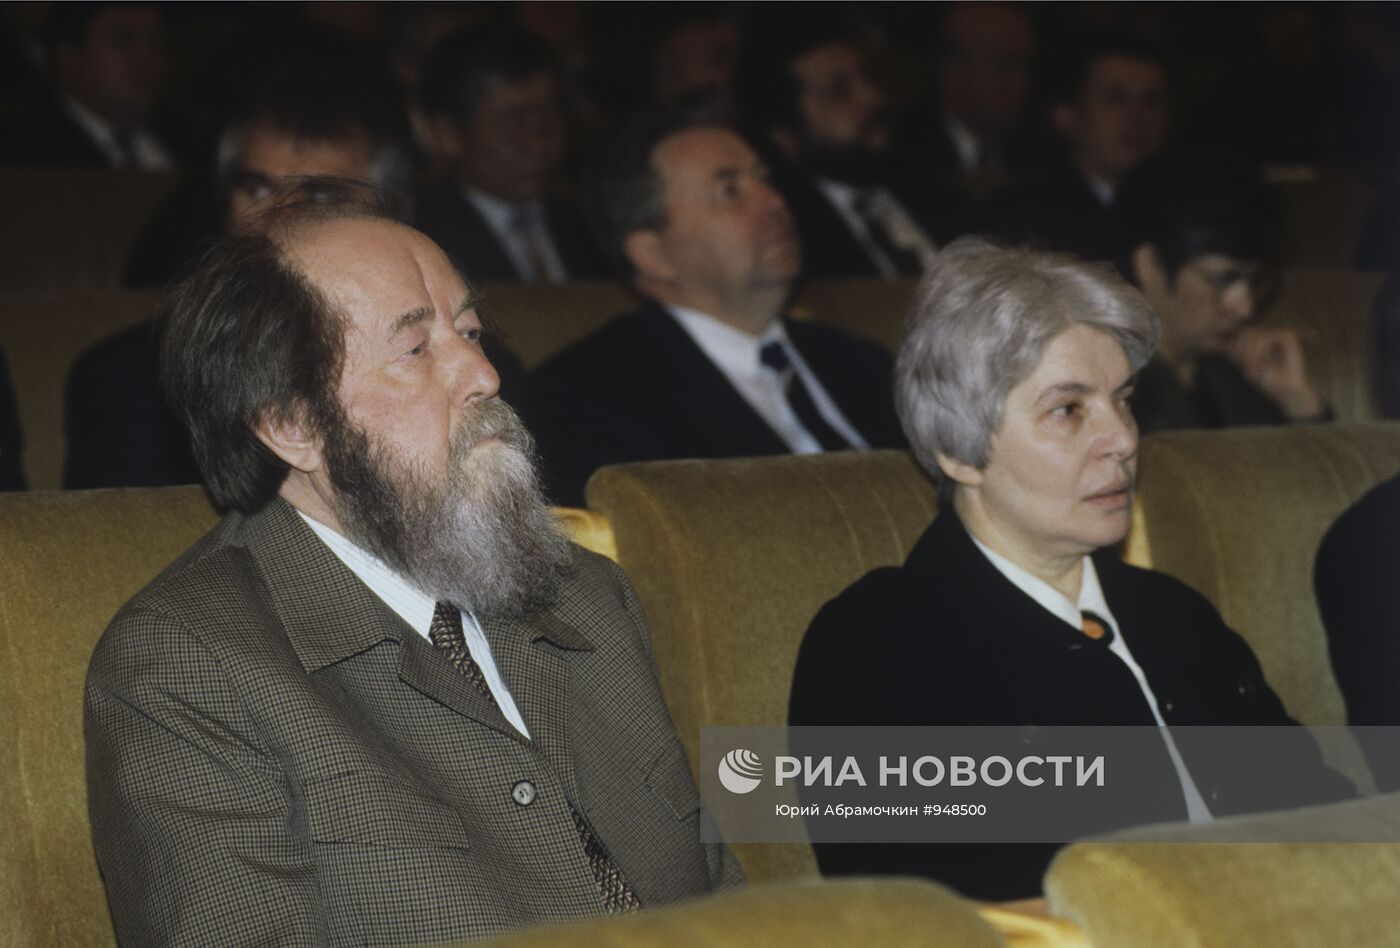 А.И. Солженицын с супругой Н.Д. Солженицыной (Светловой)